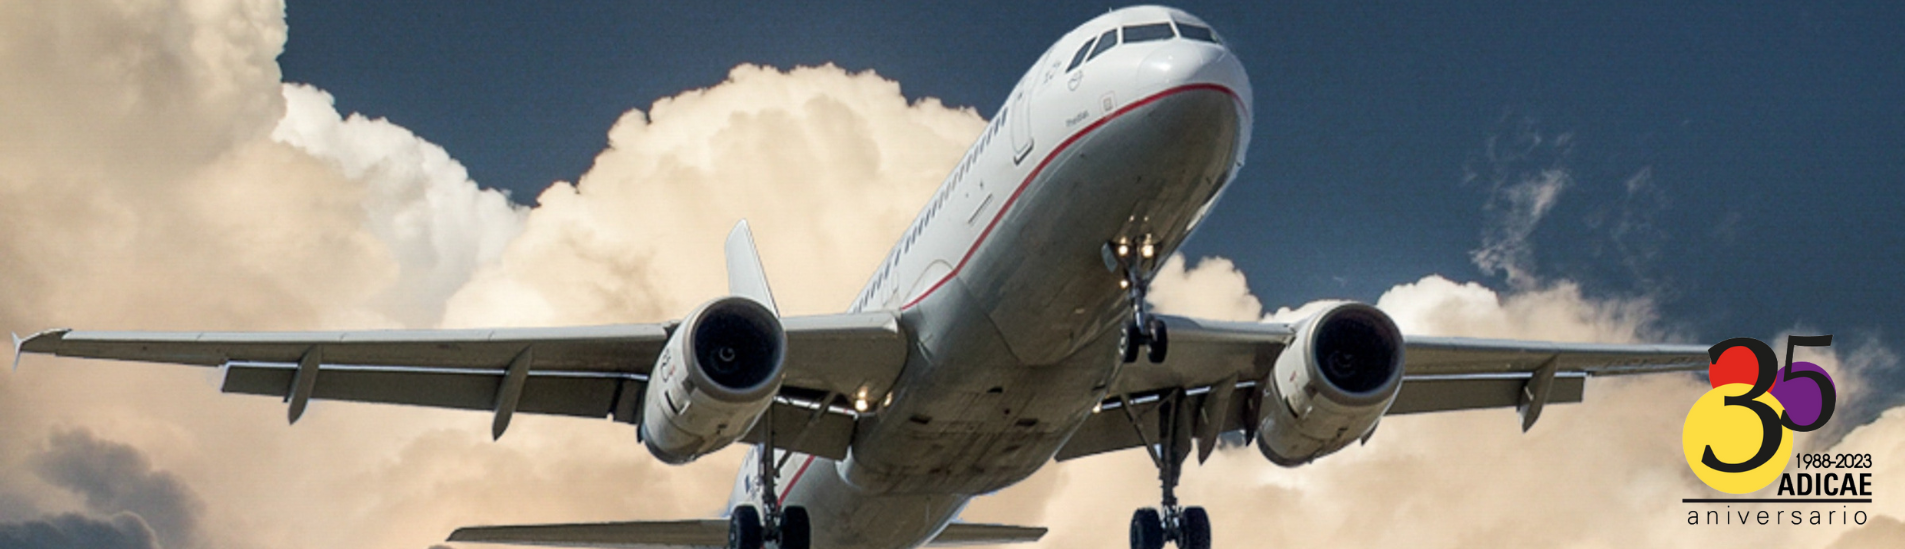 ADICAE exige al Ministerio de Exteriores que priorice los intereses de los viajeros al de las aerolíneas tras el terremoto de Marruecos